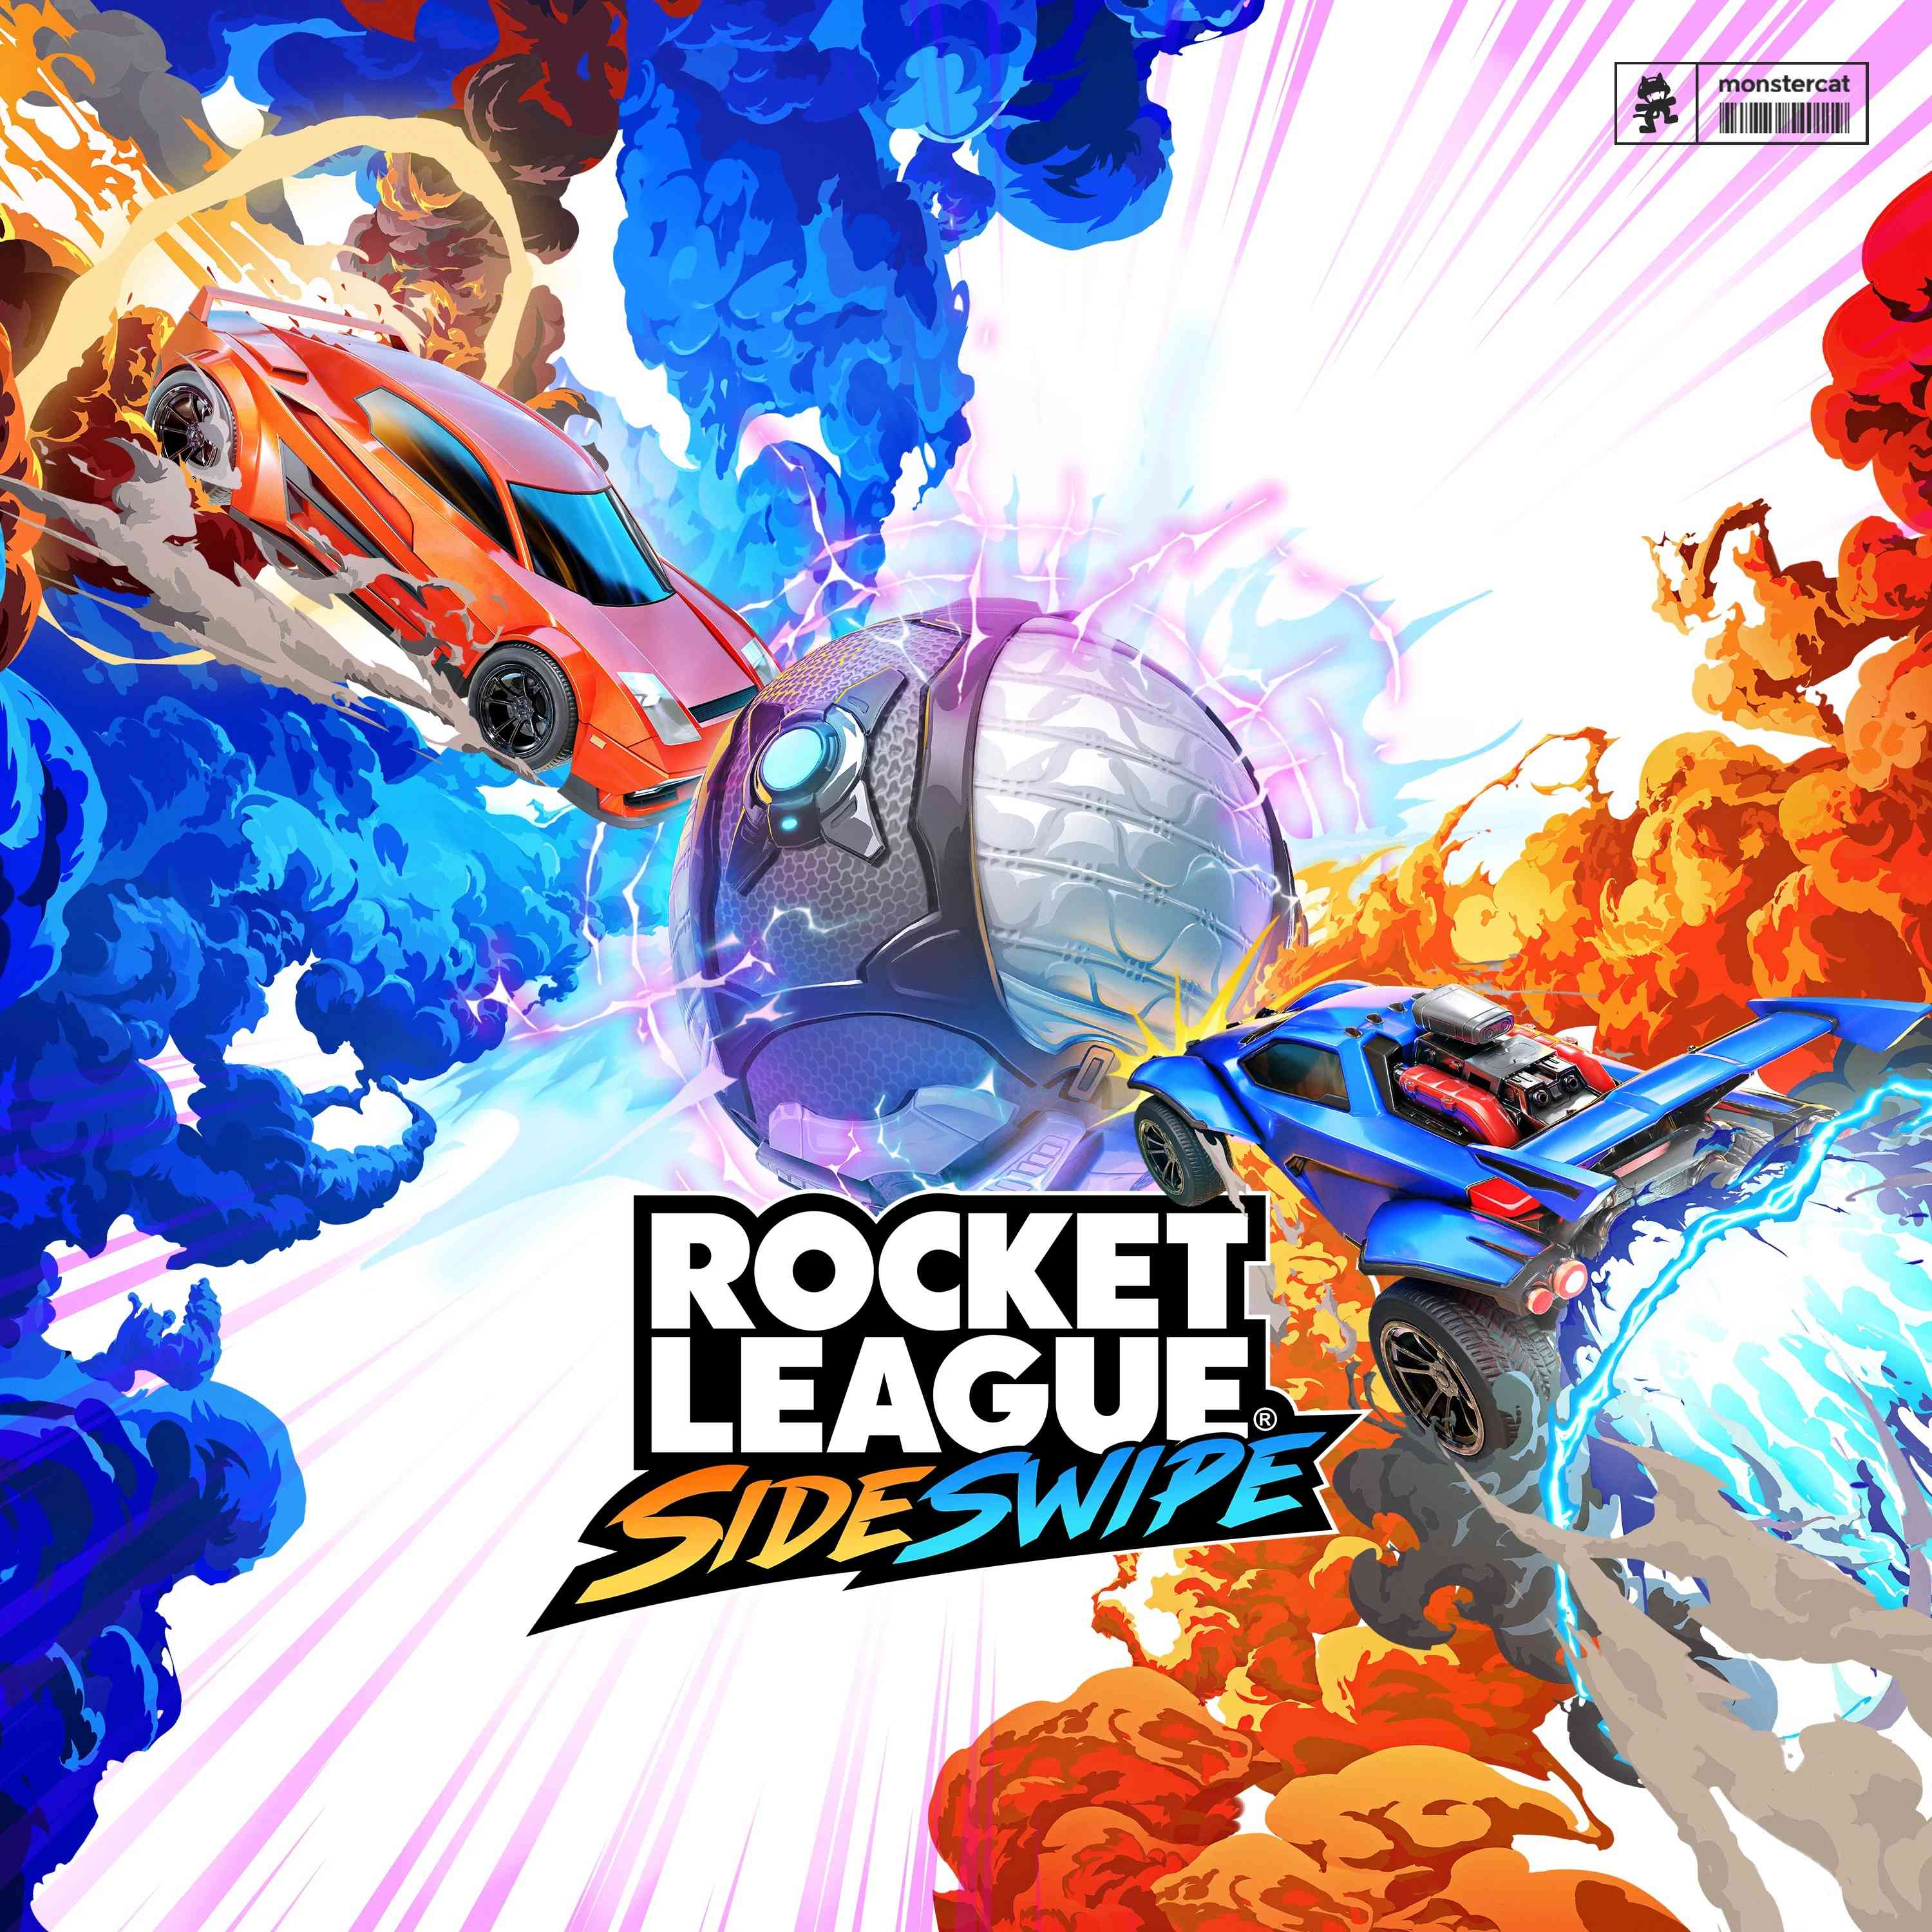 Rocket League: Sideswipe (Original Soundtrack) Vol. 1